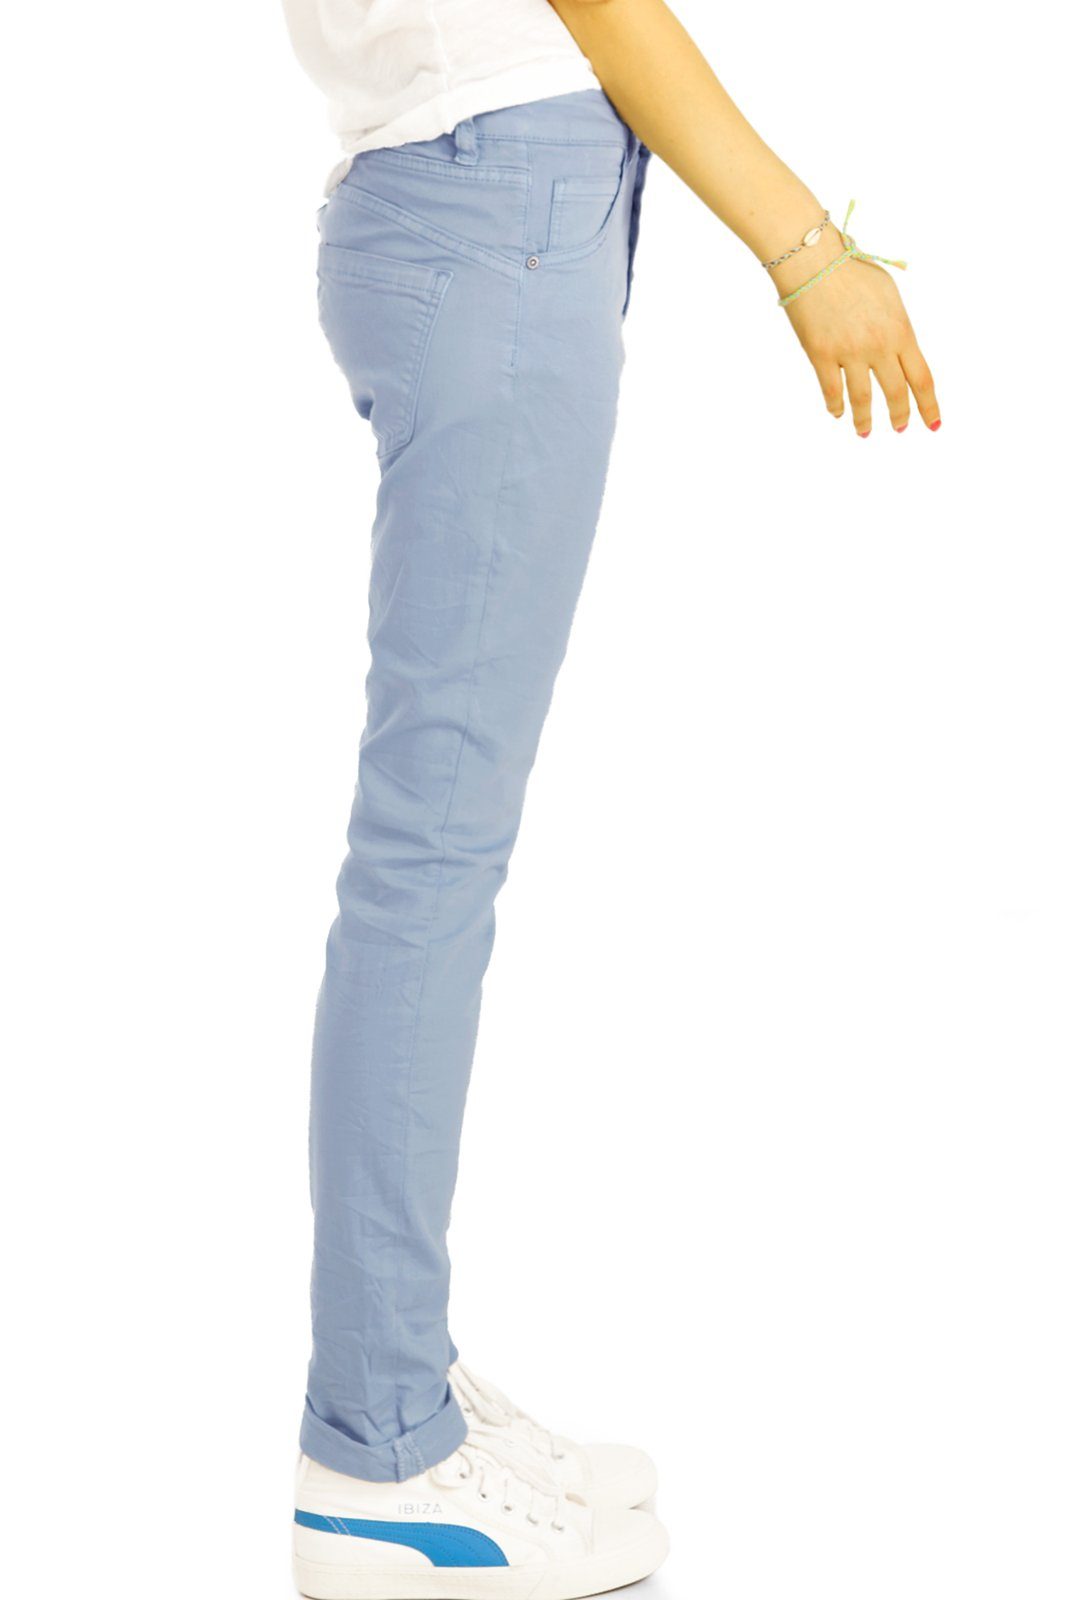 vordere Stoffhose Knopfleiste styled - - Hose Medium hellblau be Boyfriend Jeans mit j30L-3 Damen Waist Knopfleiste